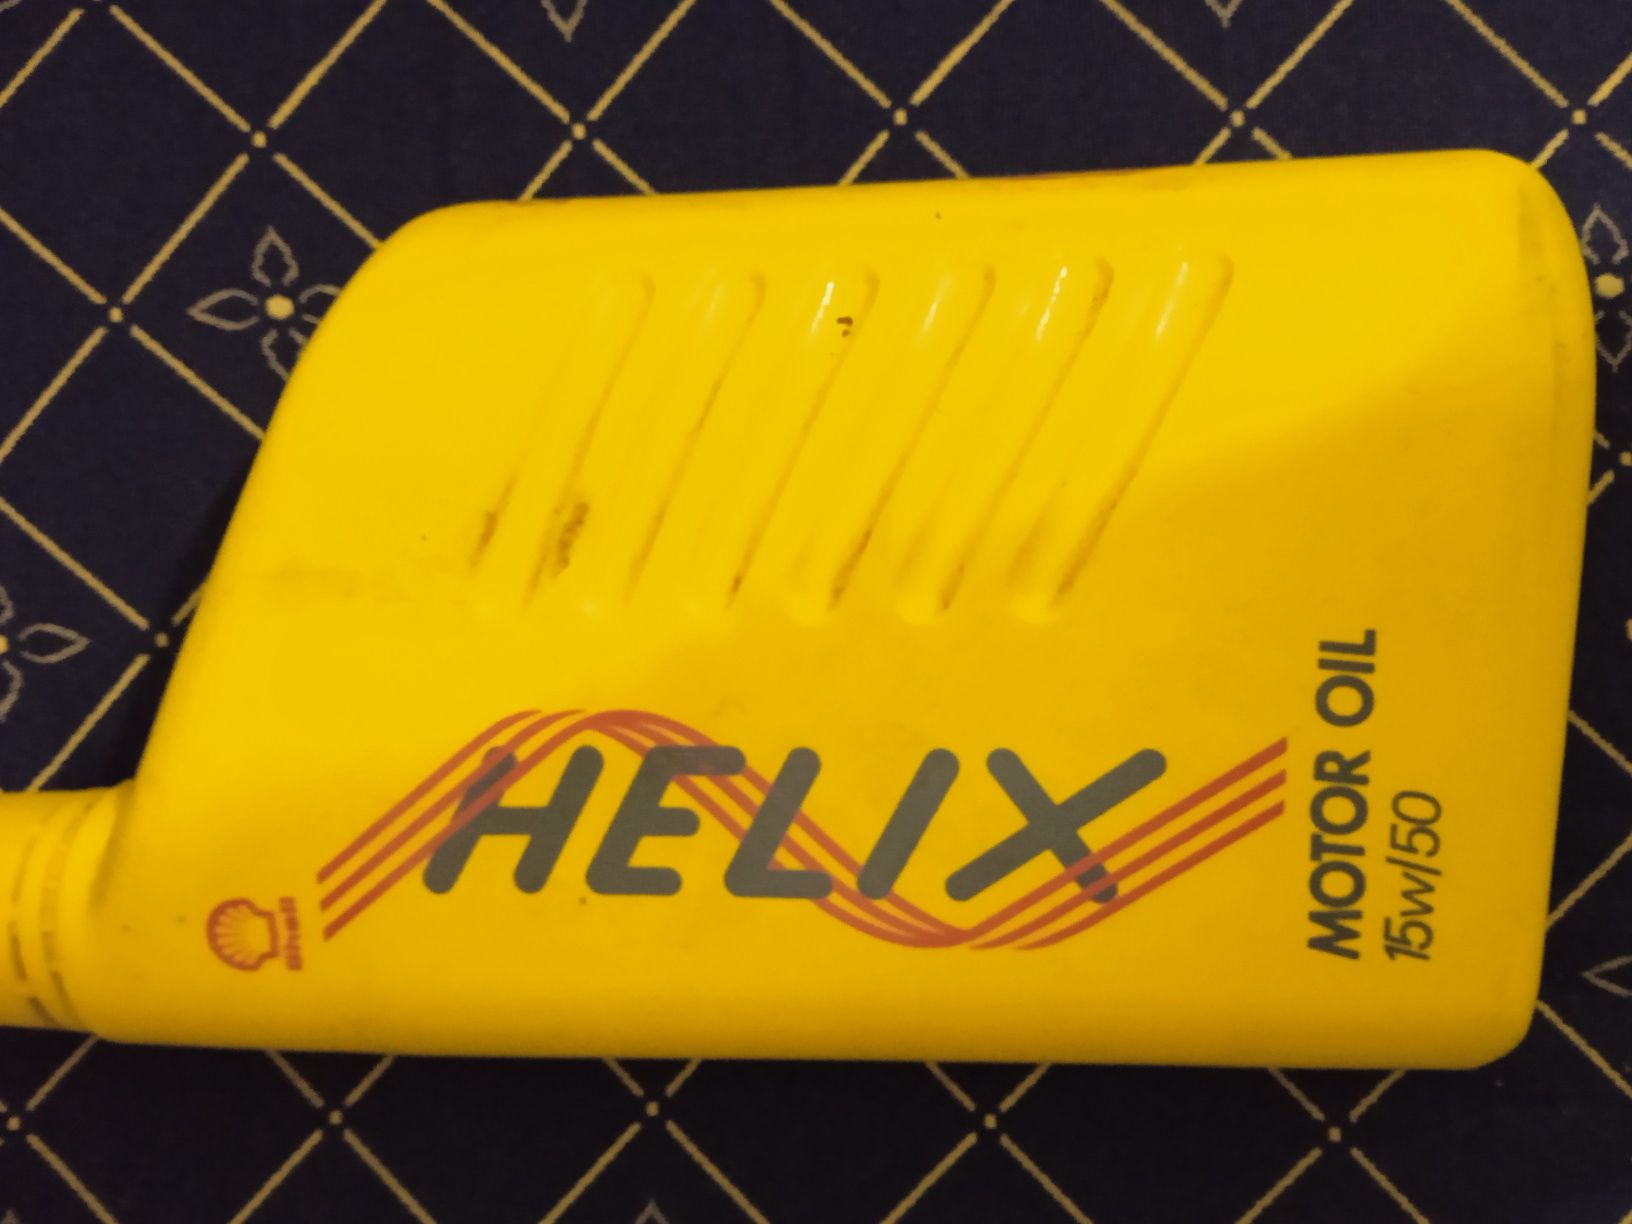 Shell Helix 15w 50